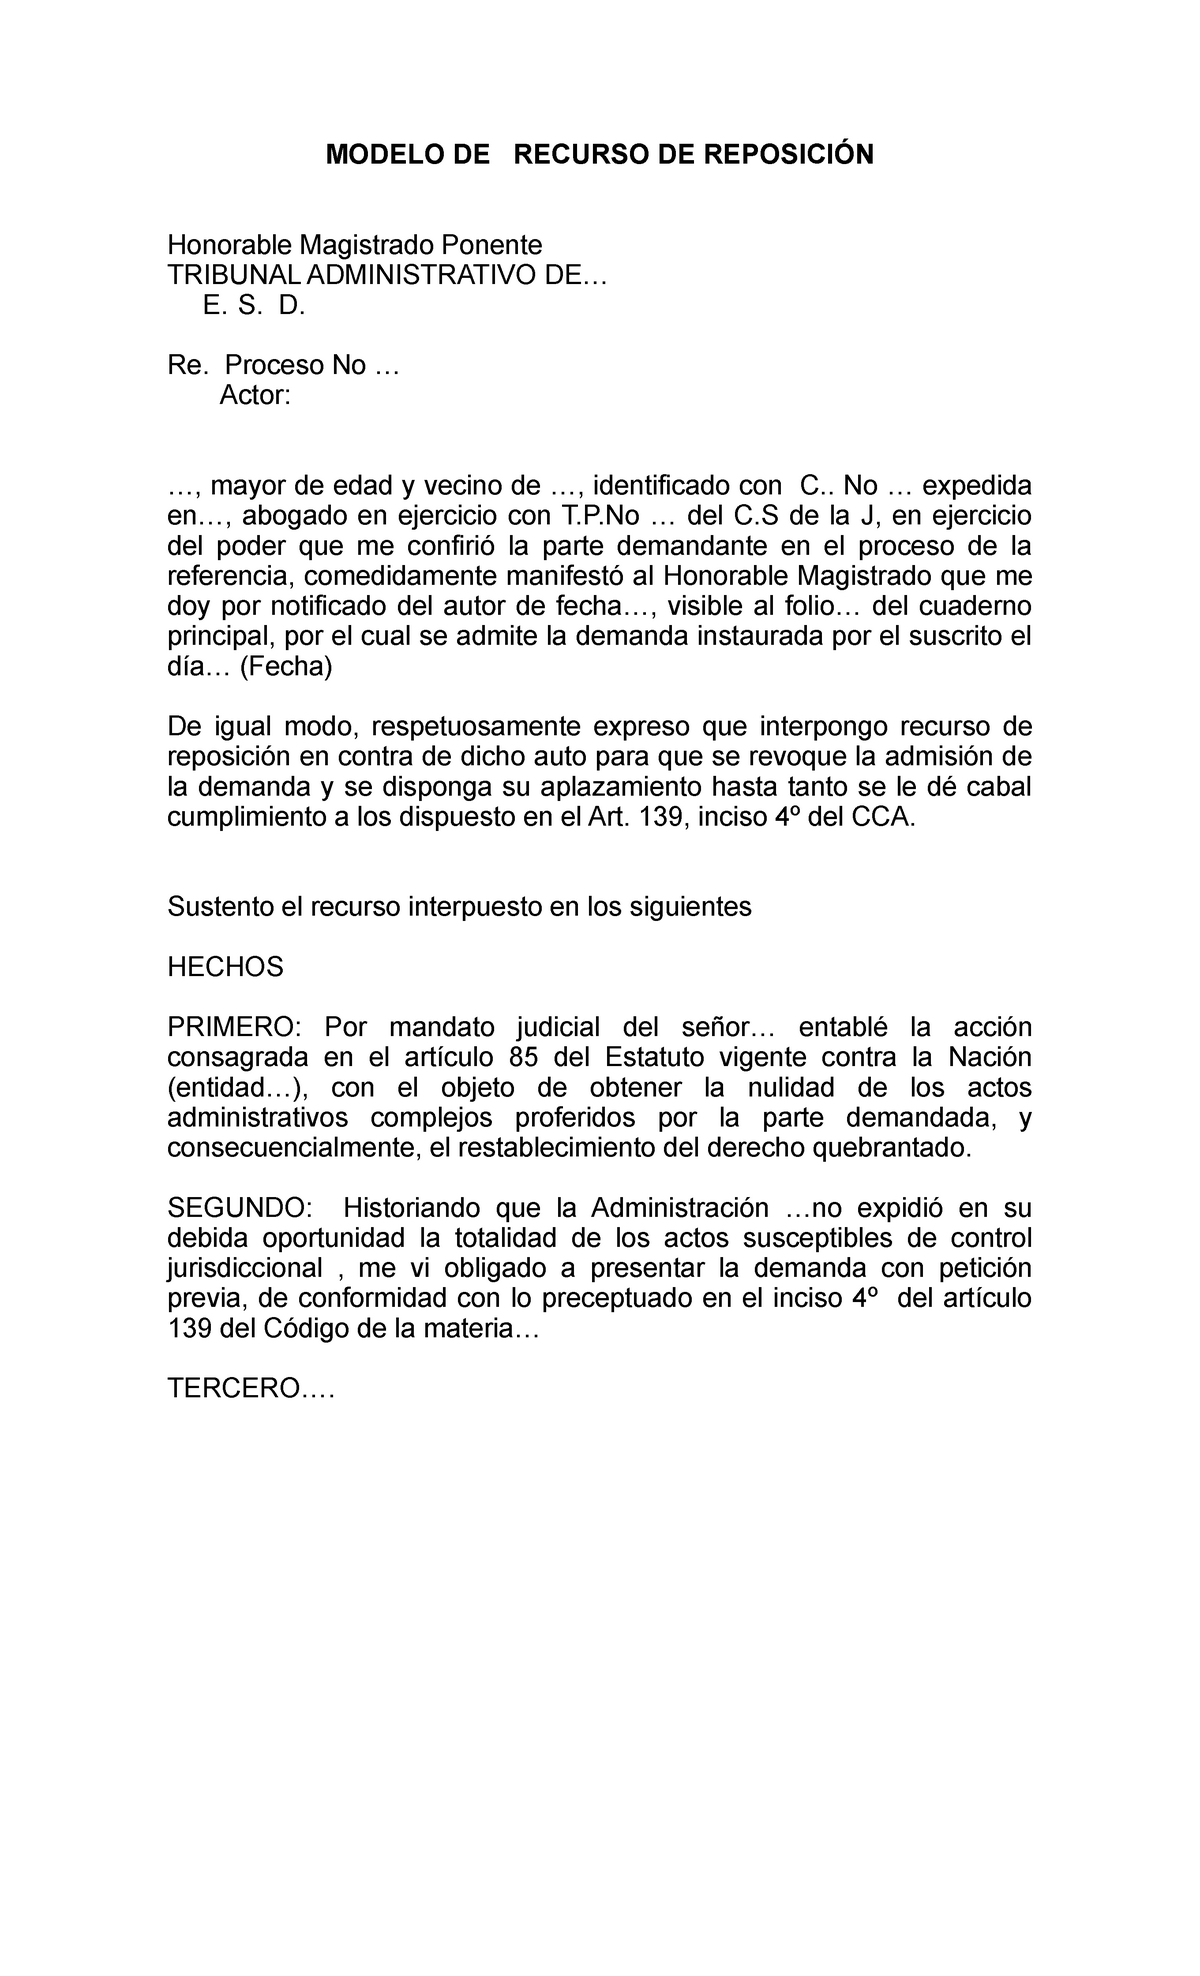 Modelo DE Recurso DE Reposición - MODELO DE RECURSO DE REPOSICIÓN Honorable  Magistrado Ponente - Studocu